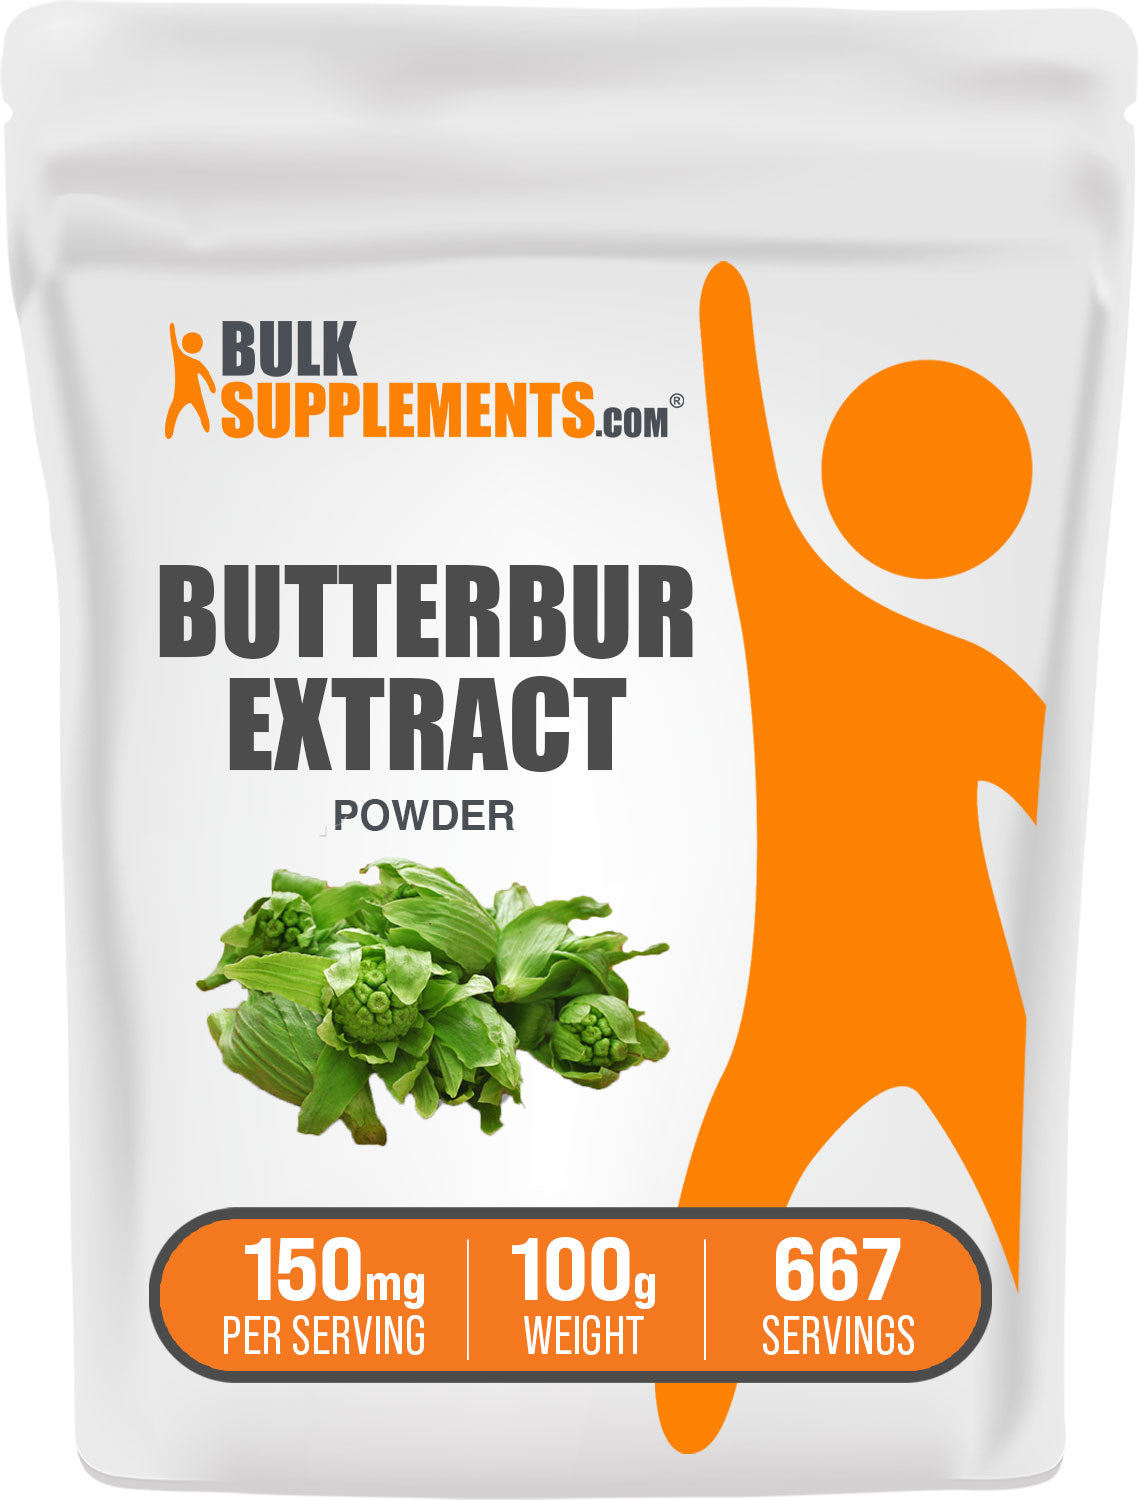 BulkSupplements.com Butterbur Extract Powder 100g Bag